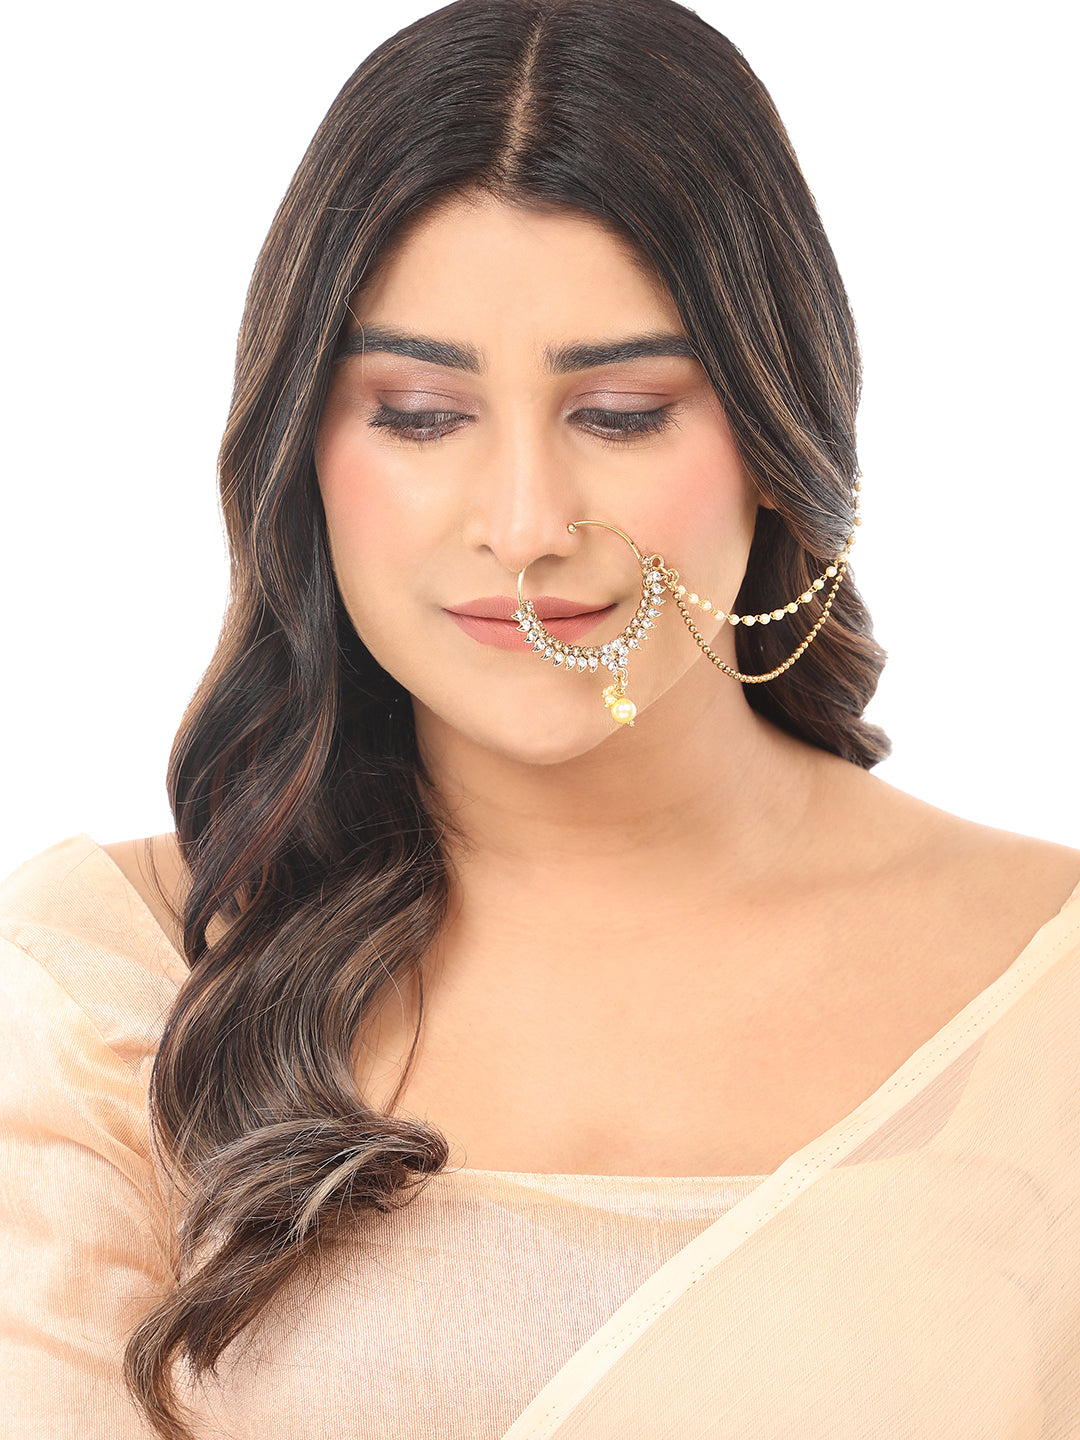 Bridal No Piercing Nath Nose Ring Kundan By Anikas Creation